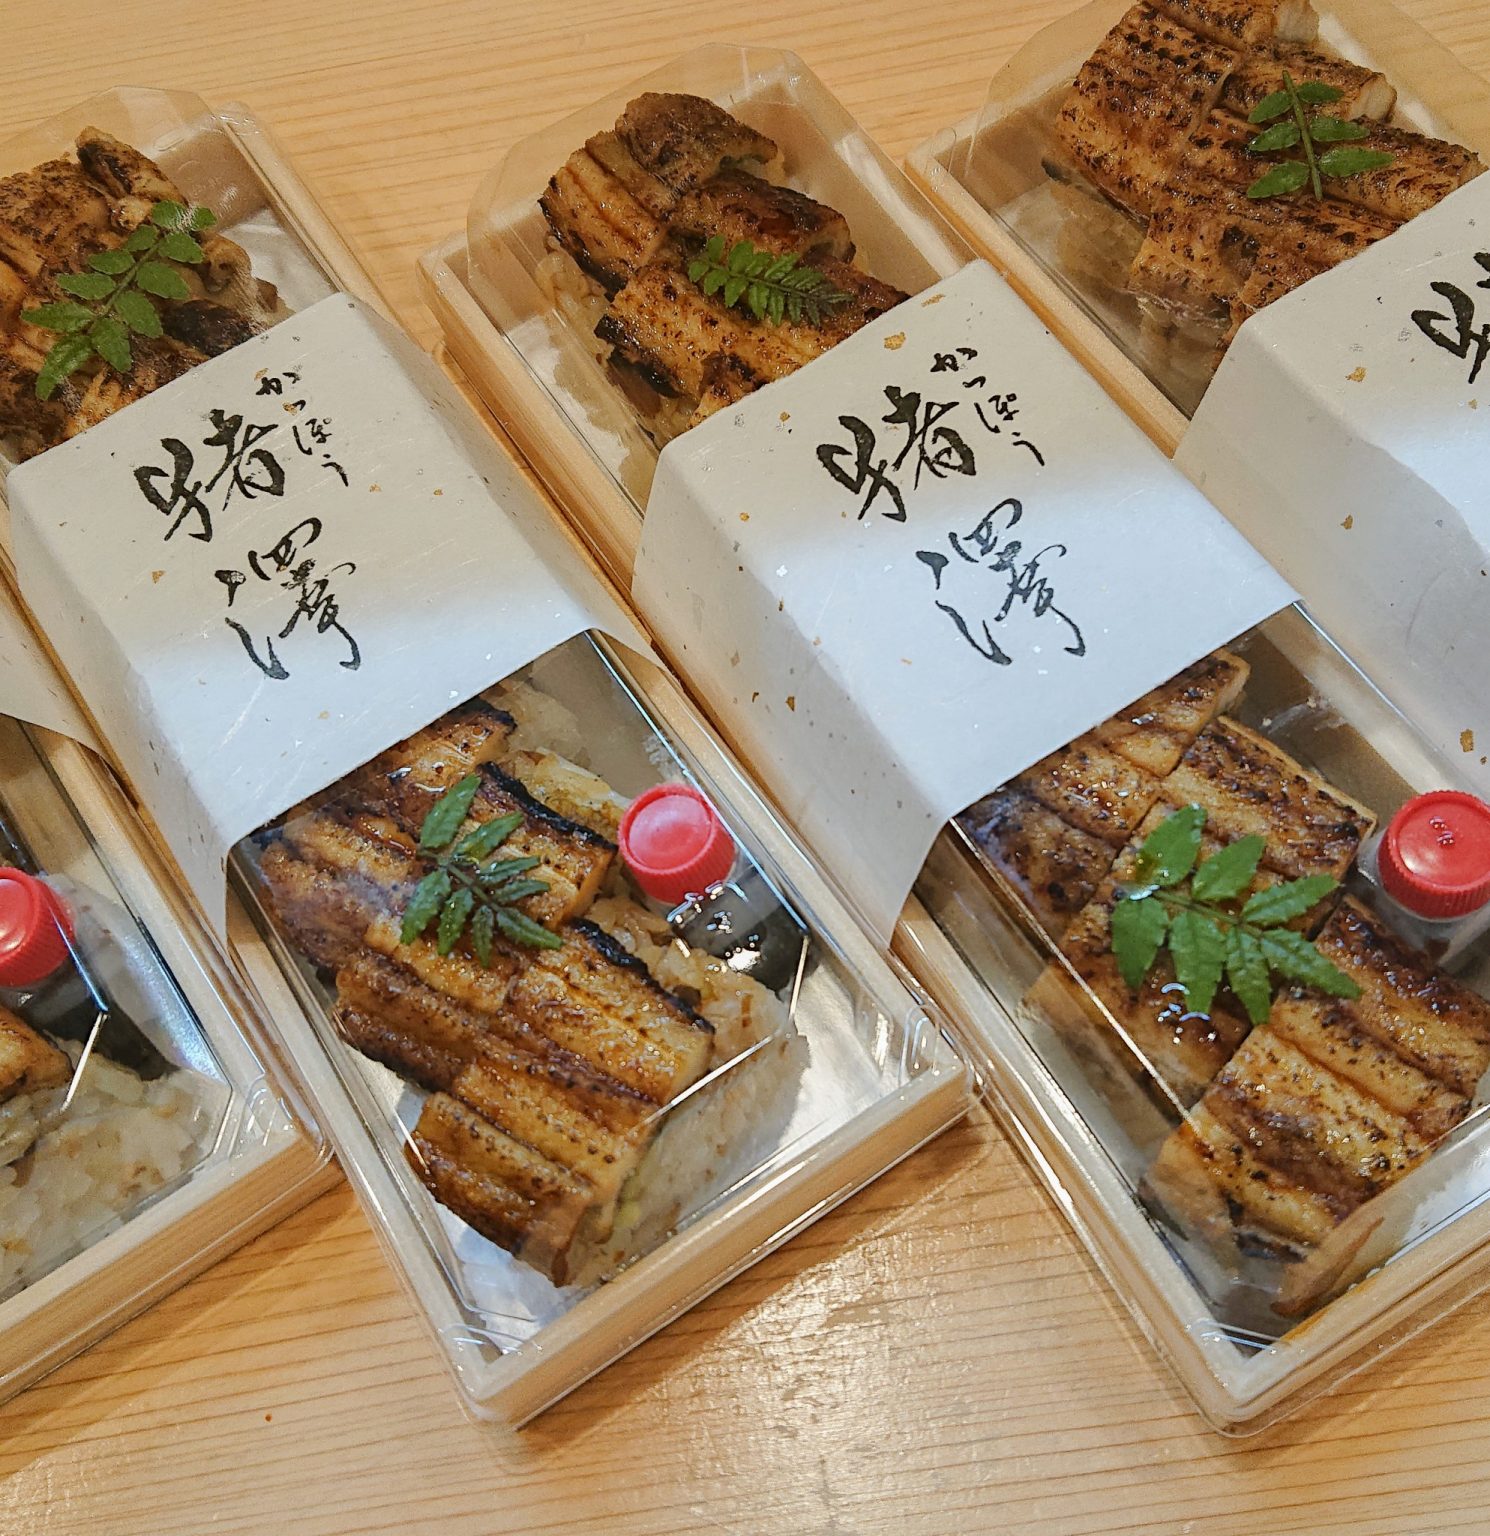 「伝助穴子寿司」2,500円